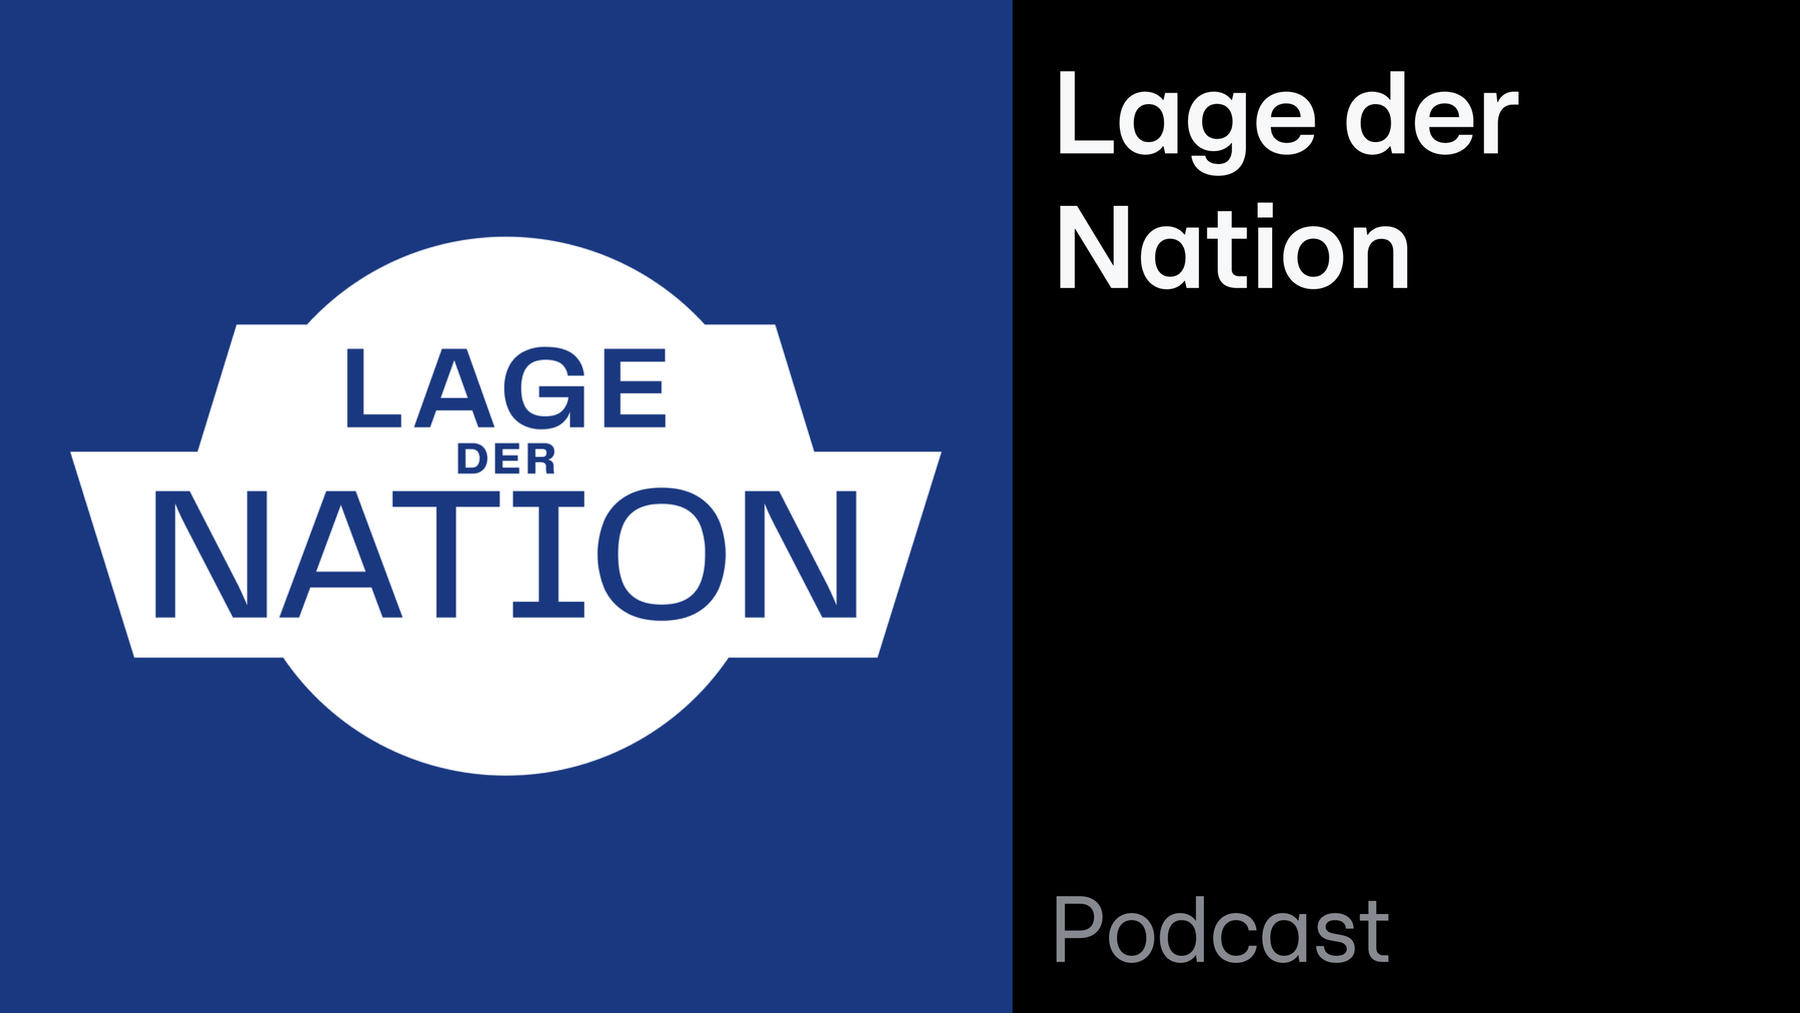 Podcast: Lage der Nation